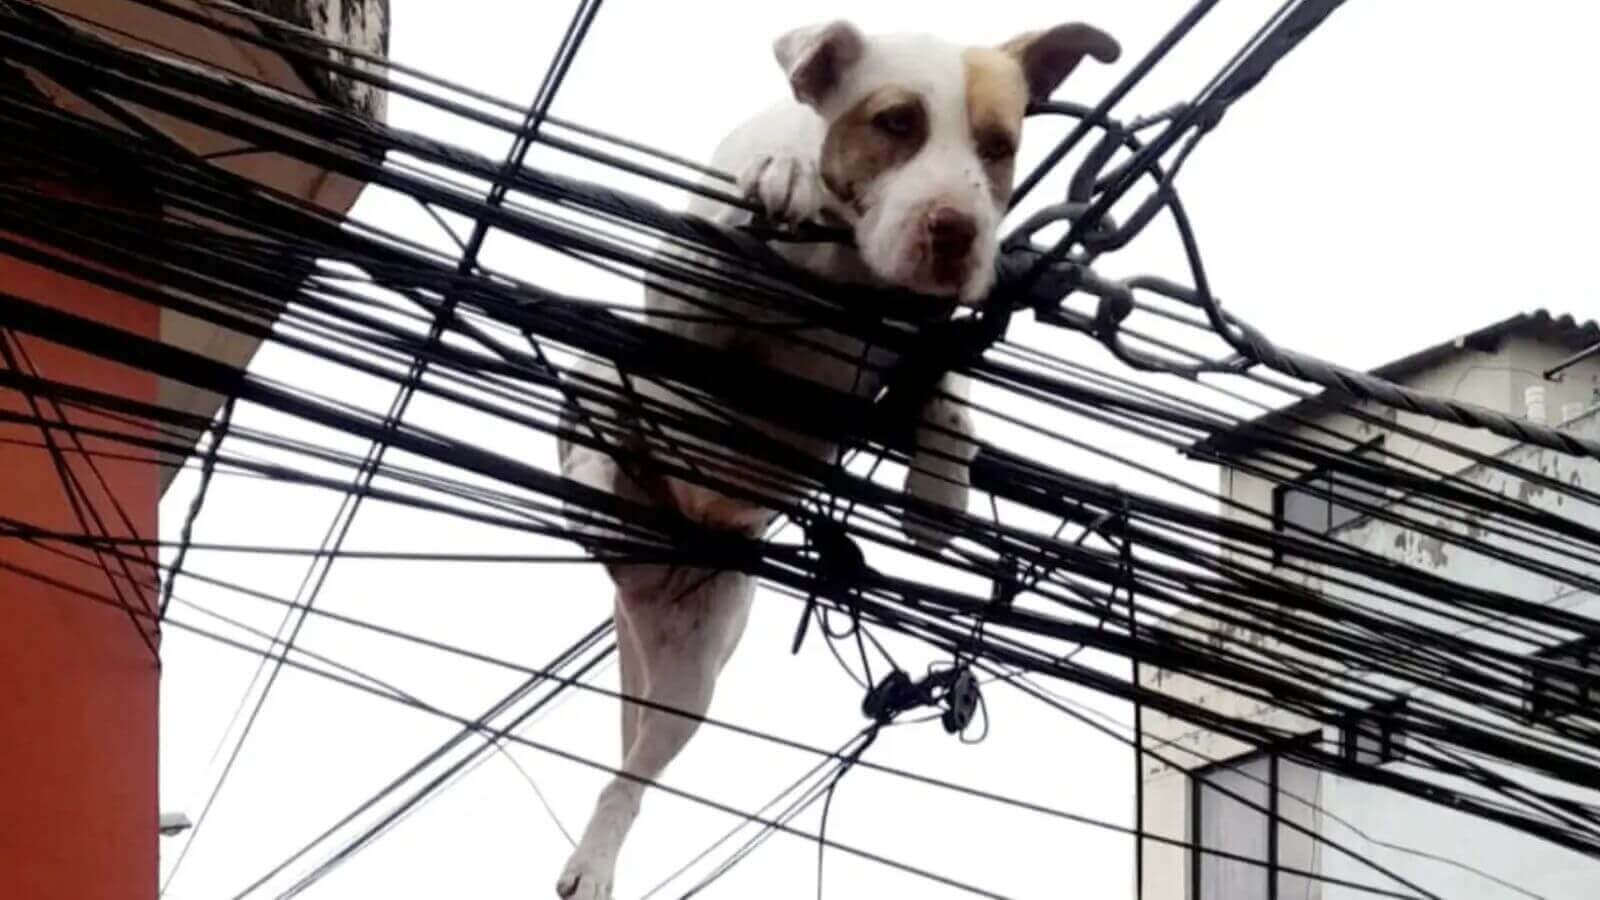 Cachorro preso em meio a uma rede de fios elétricos. suspenso no ar, com as patas dianteiras apoiadas nos fios e as patas traseiras penduradas